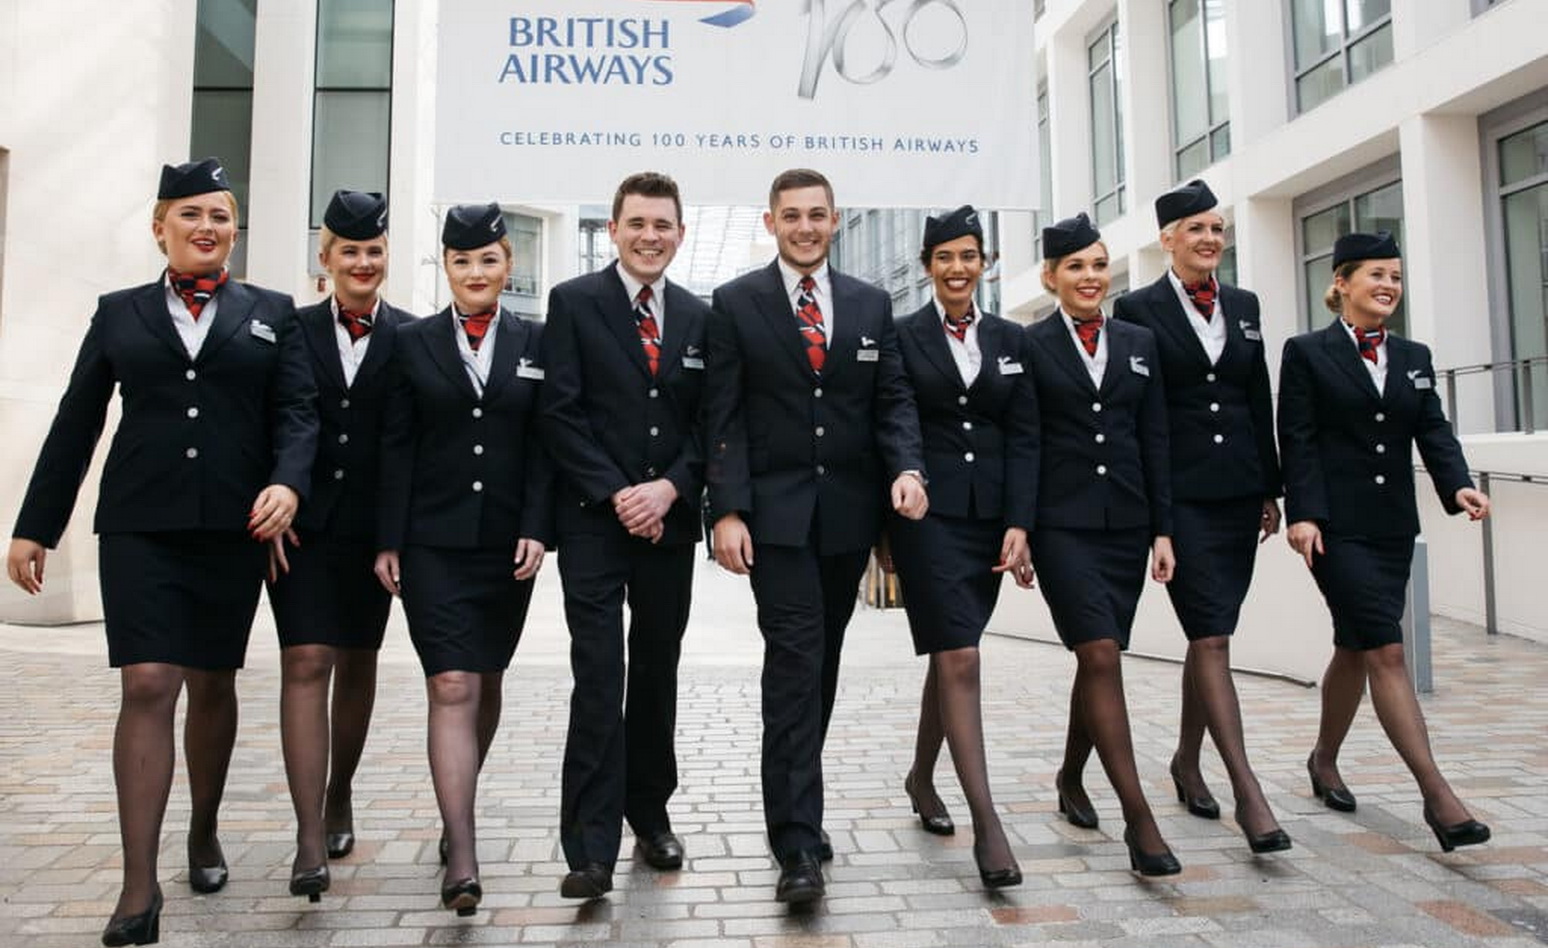 Авіякампанія British Airways адмяняе архаічныя гендэрныя правілы, якія забараняюць супрацоўнікам мужчынскага полу насіць макіяж